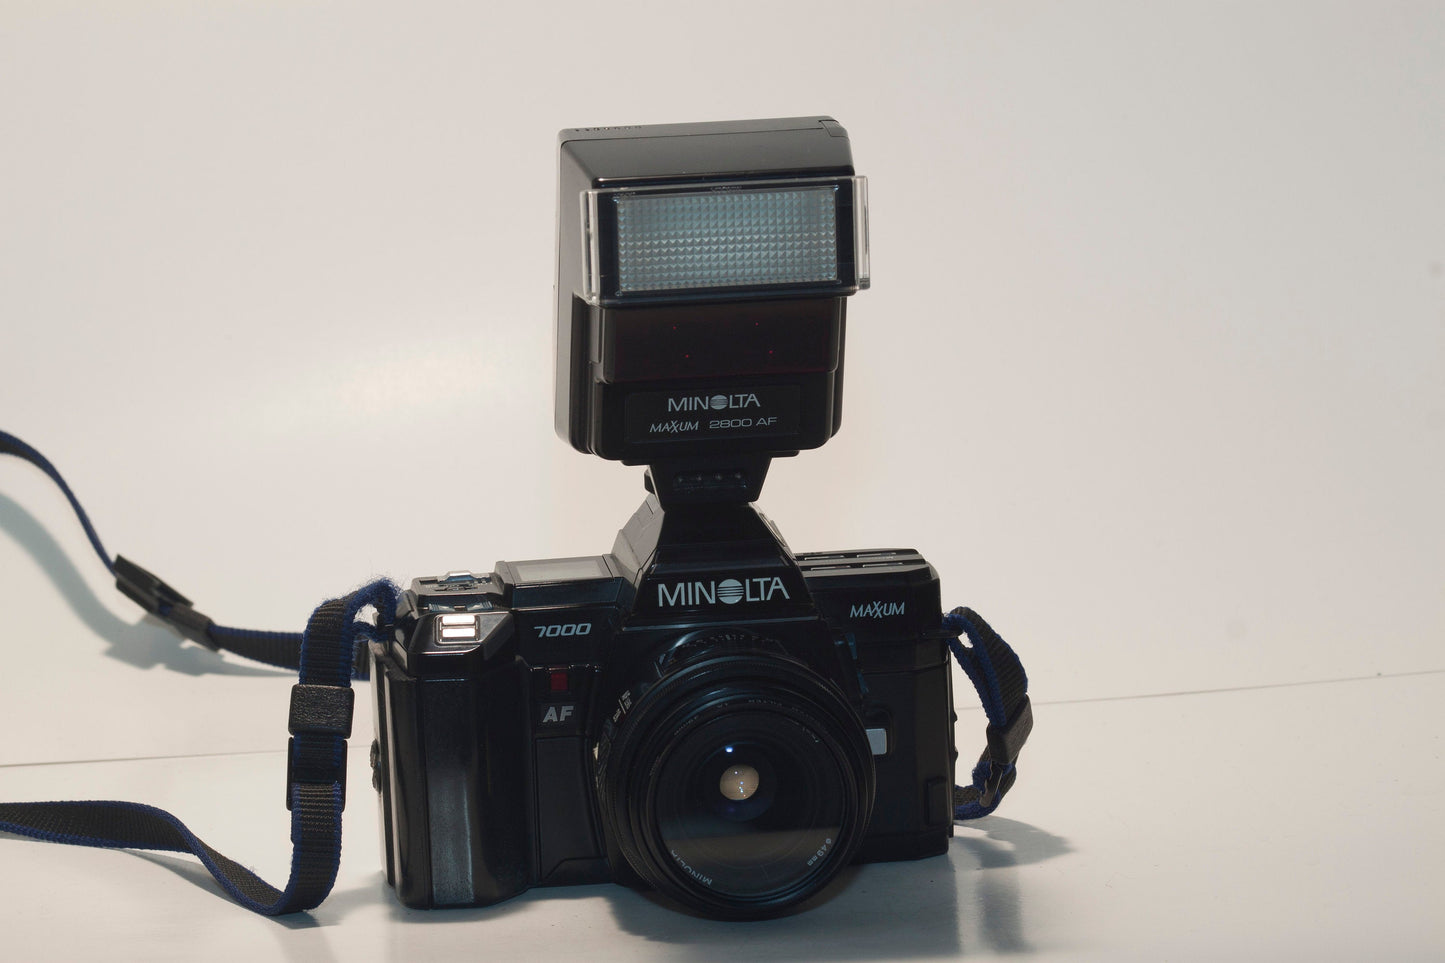 Minolta Maxxum 7000 35mm SLR set